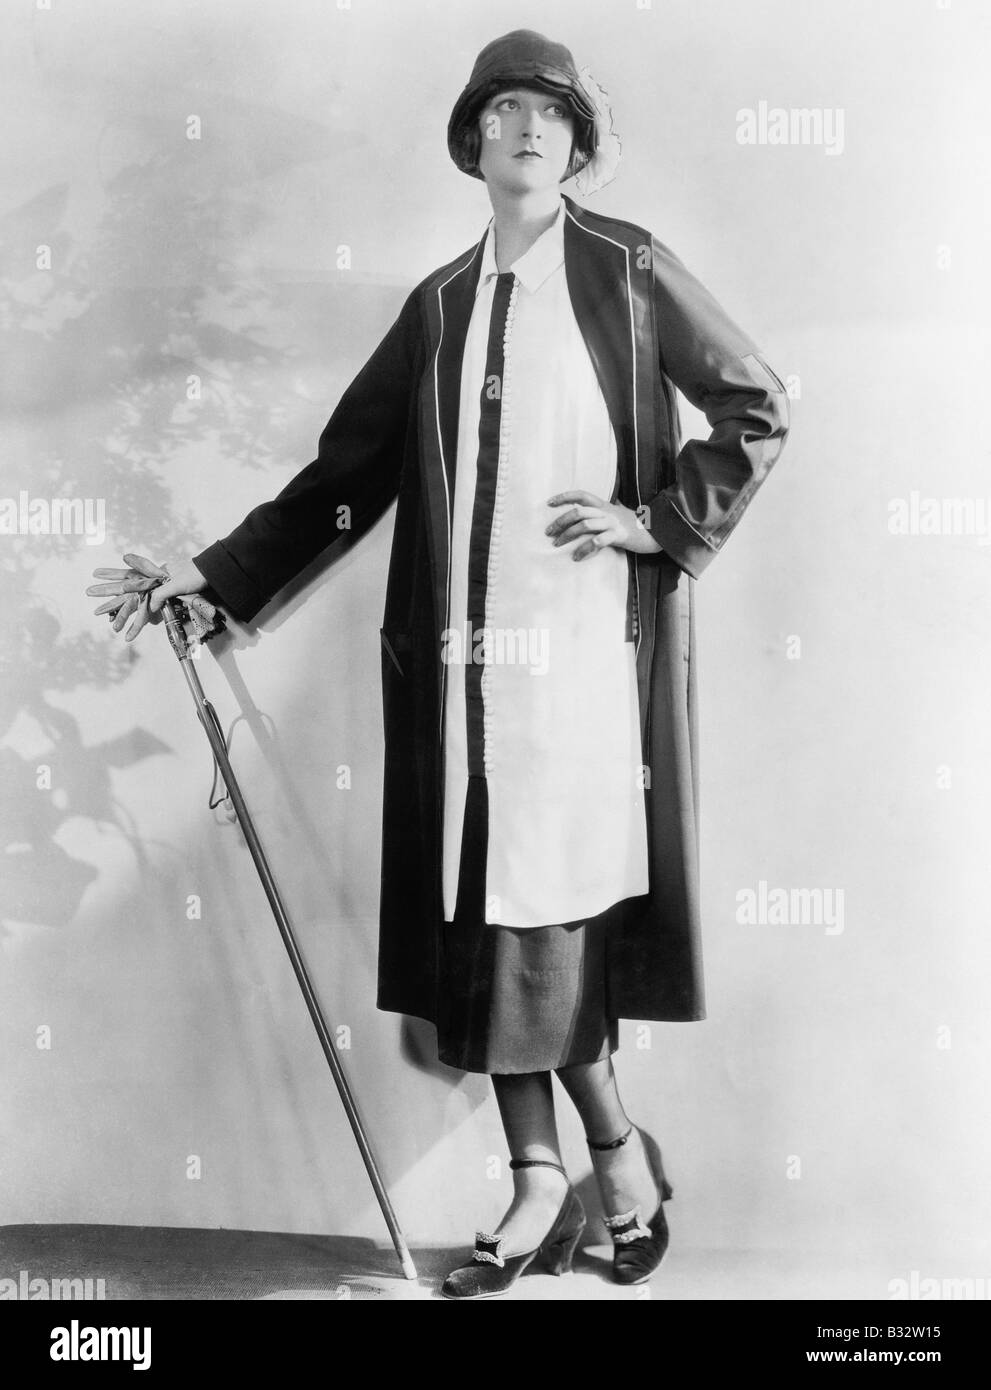 Vestido de abrigo Imágenes de stock en blanco y negro - Alamy